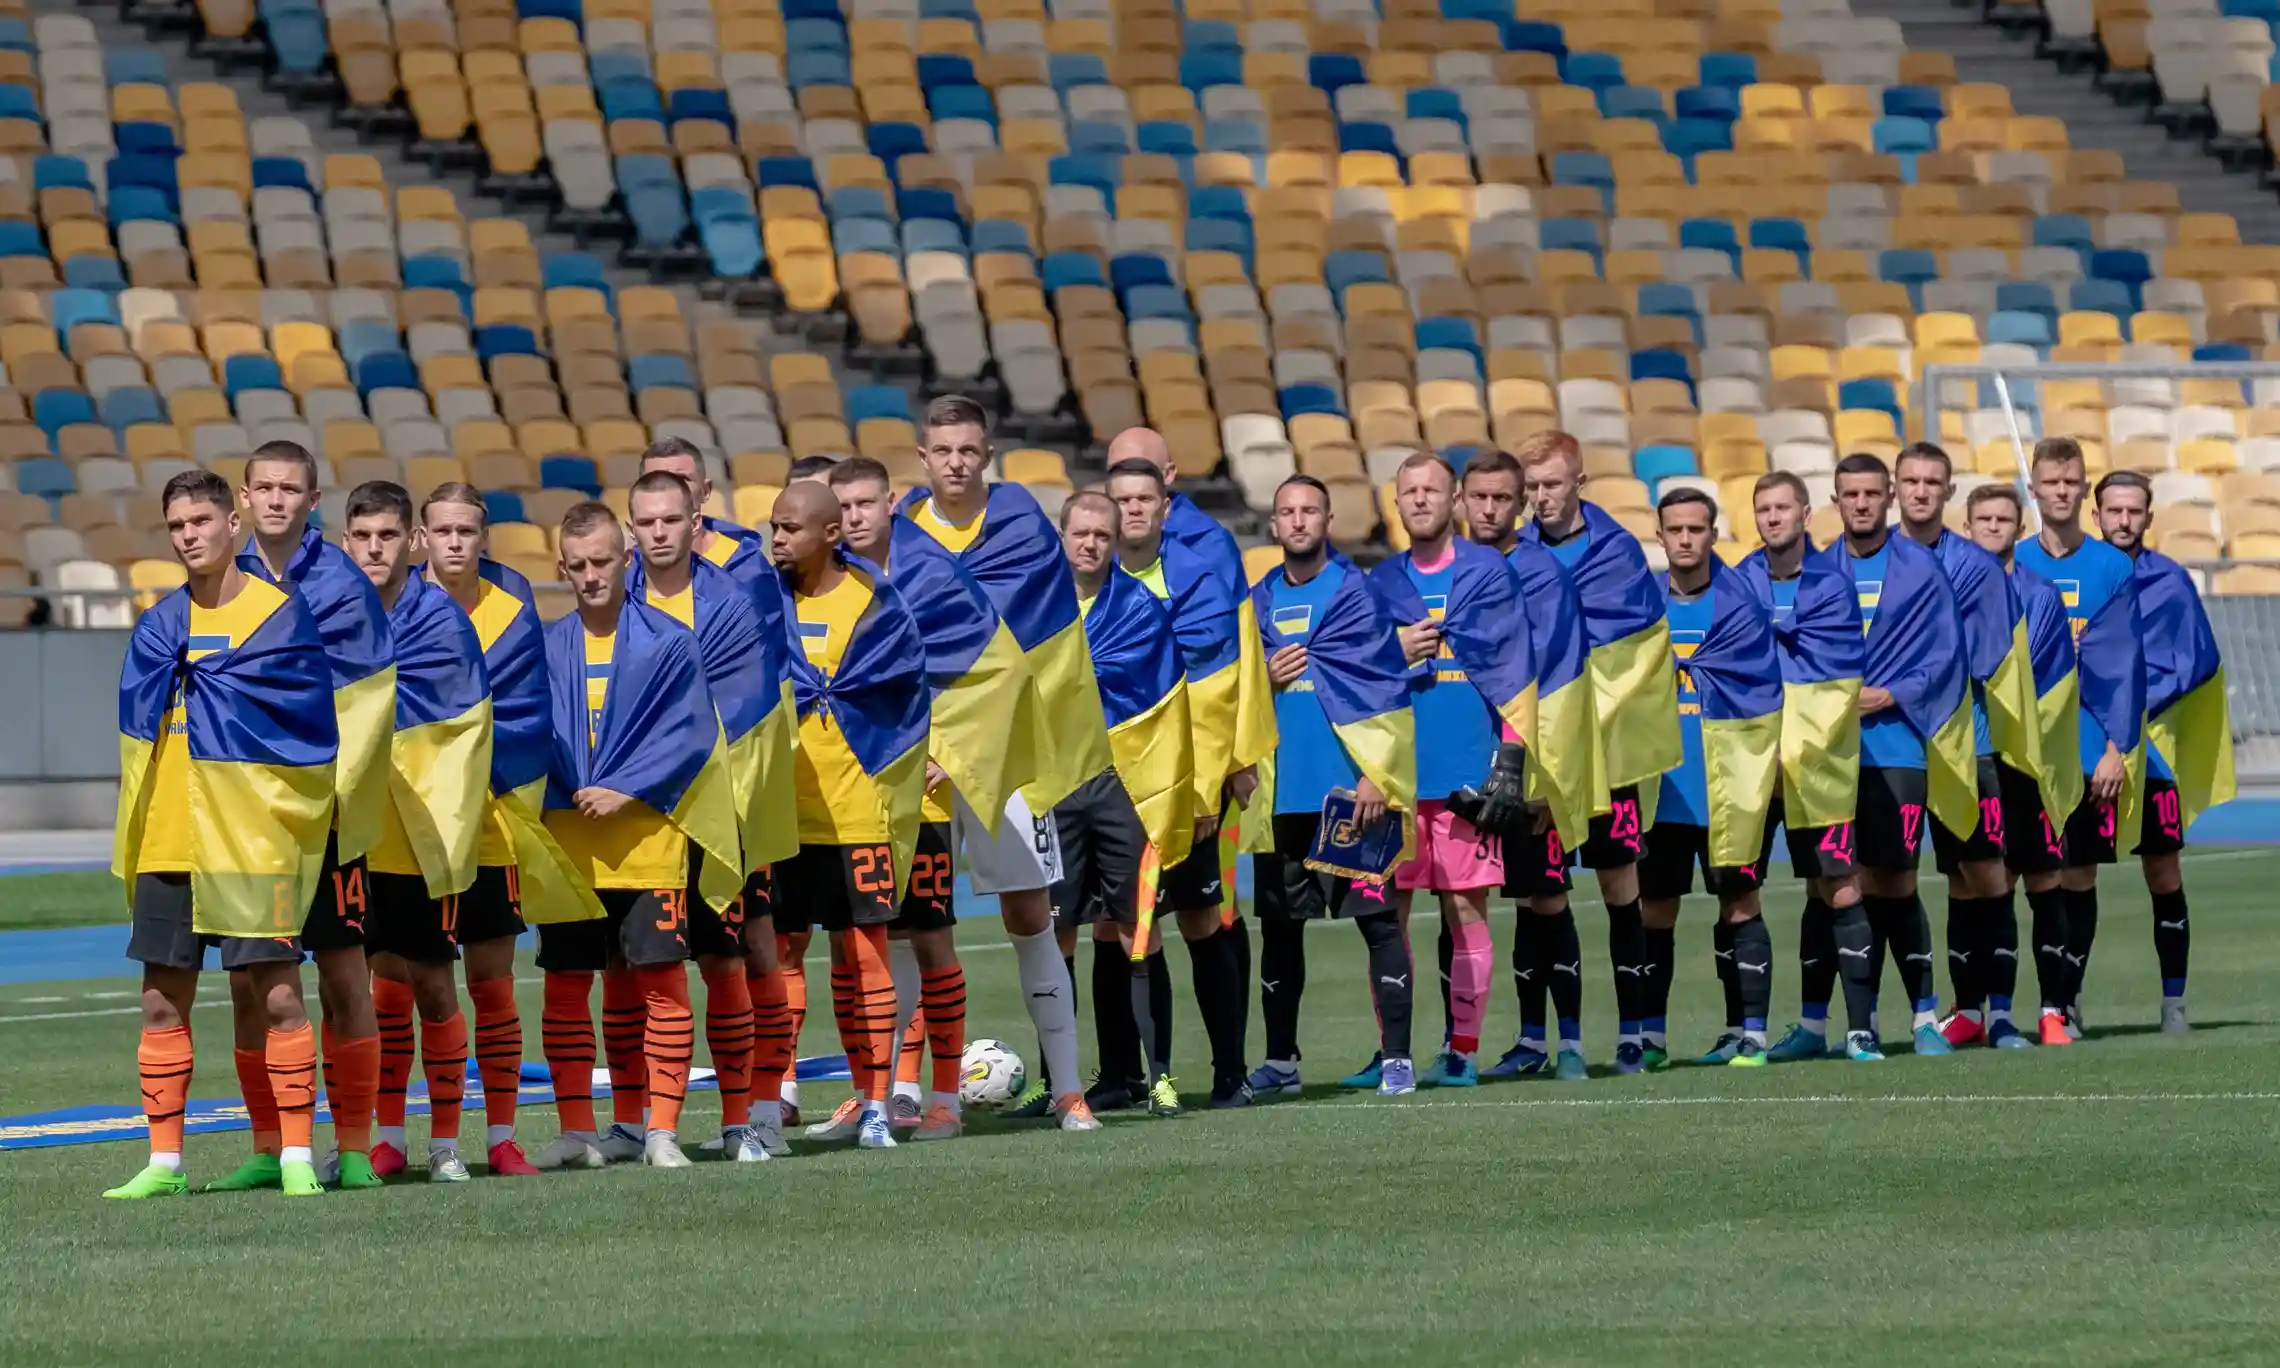 UFABETWIN ฟุตบอลยูเครนเริ่มต้นใหม่พร้อมธง ข้อความจากเซเลนสกี้ แต่ไม่มีฝูงชน